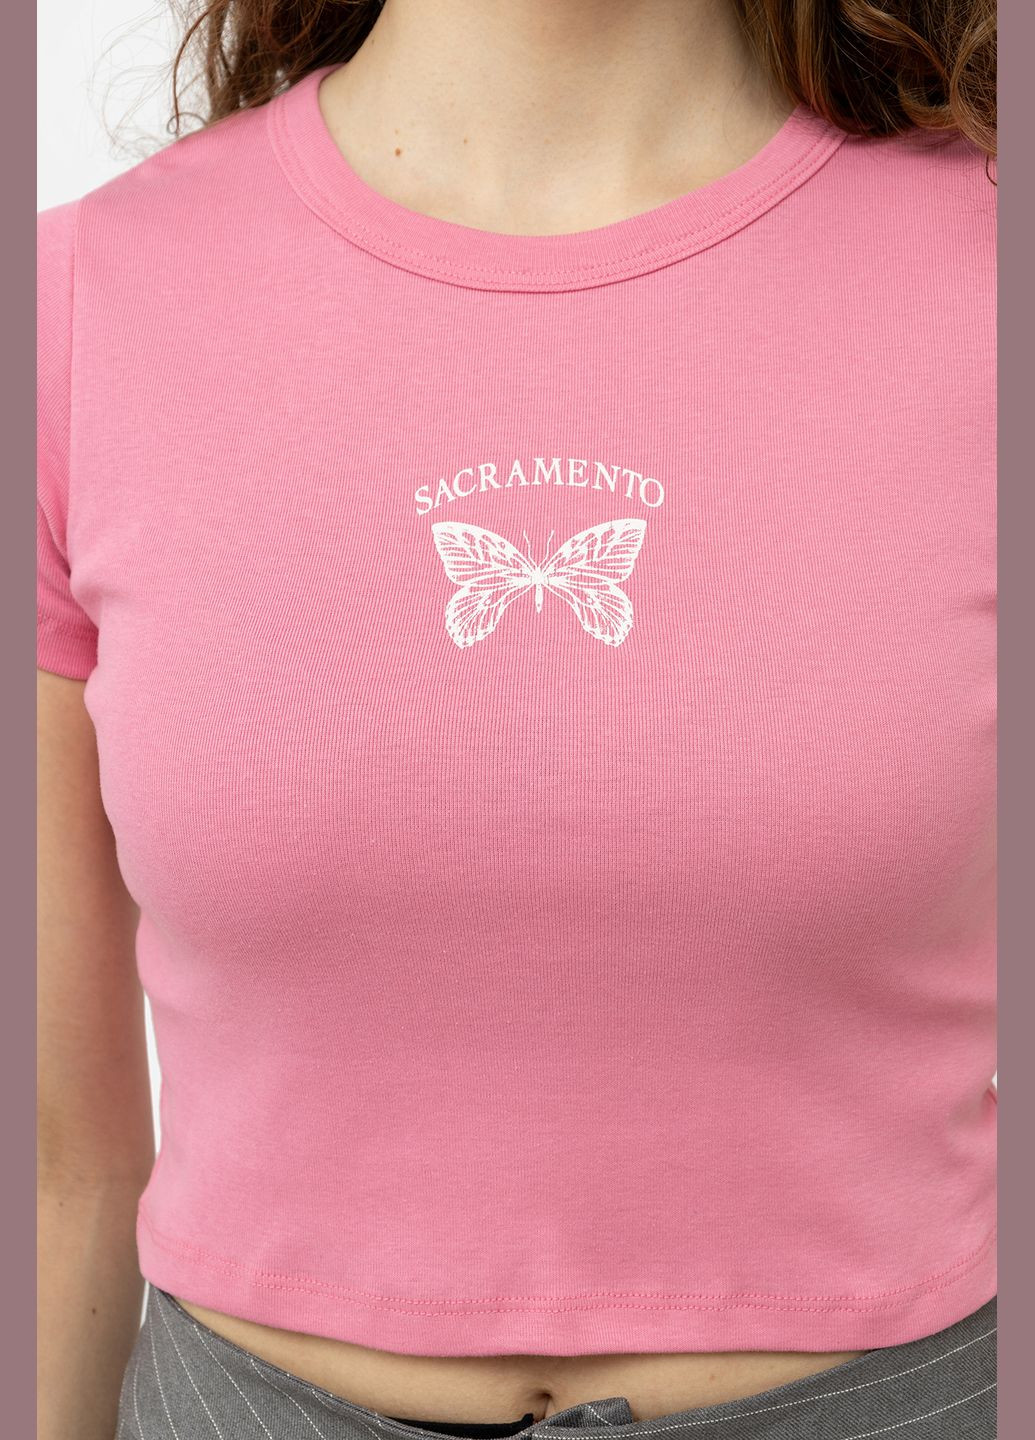 Розовая летняя женская футболка с коротким рукавом цвет розовый цб-00245334 Divon